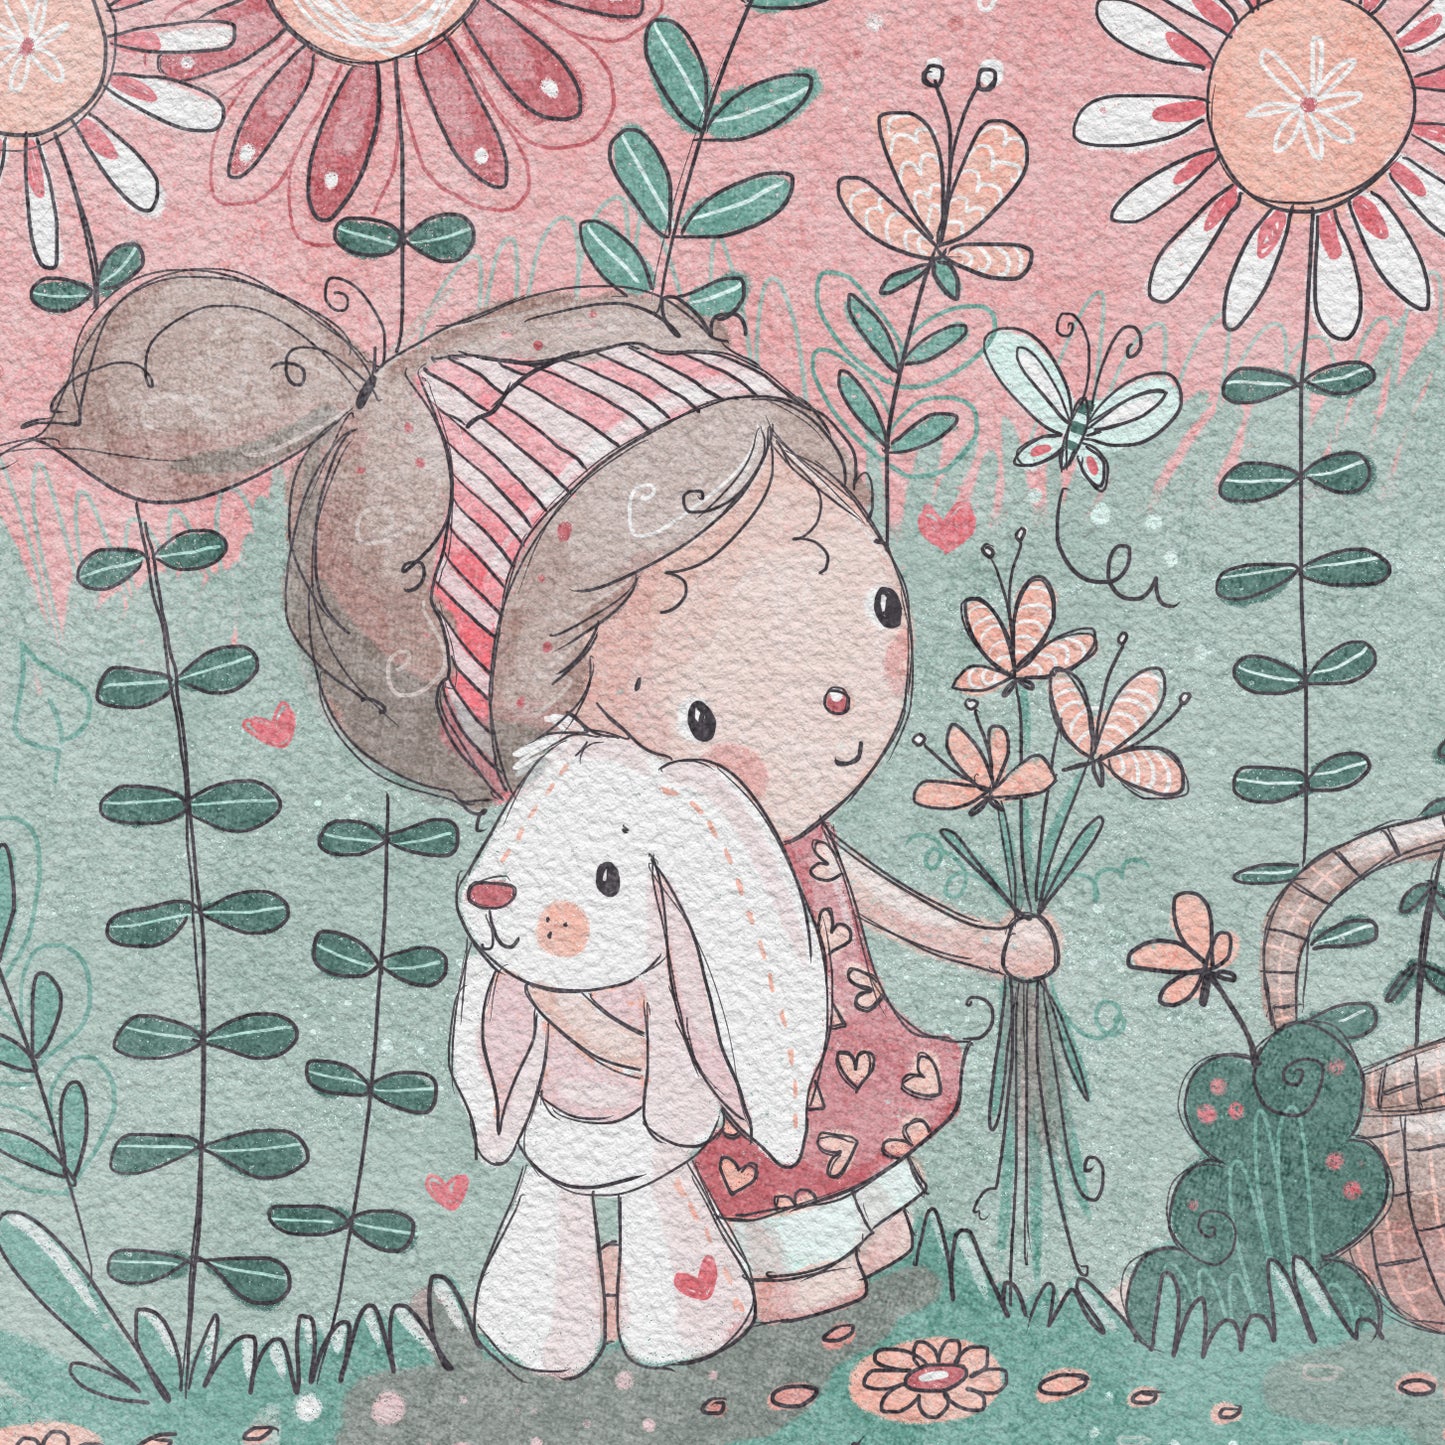 'Flower Garden' Children's Wall Art Print